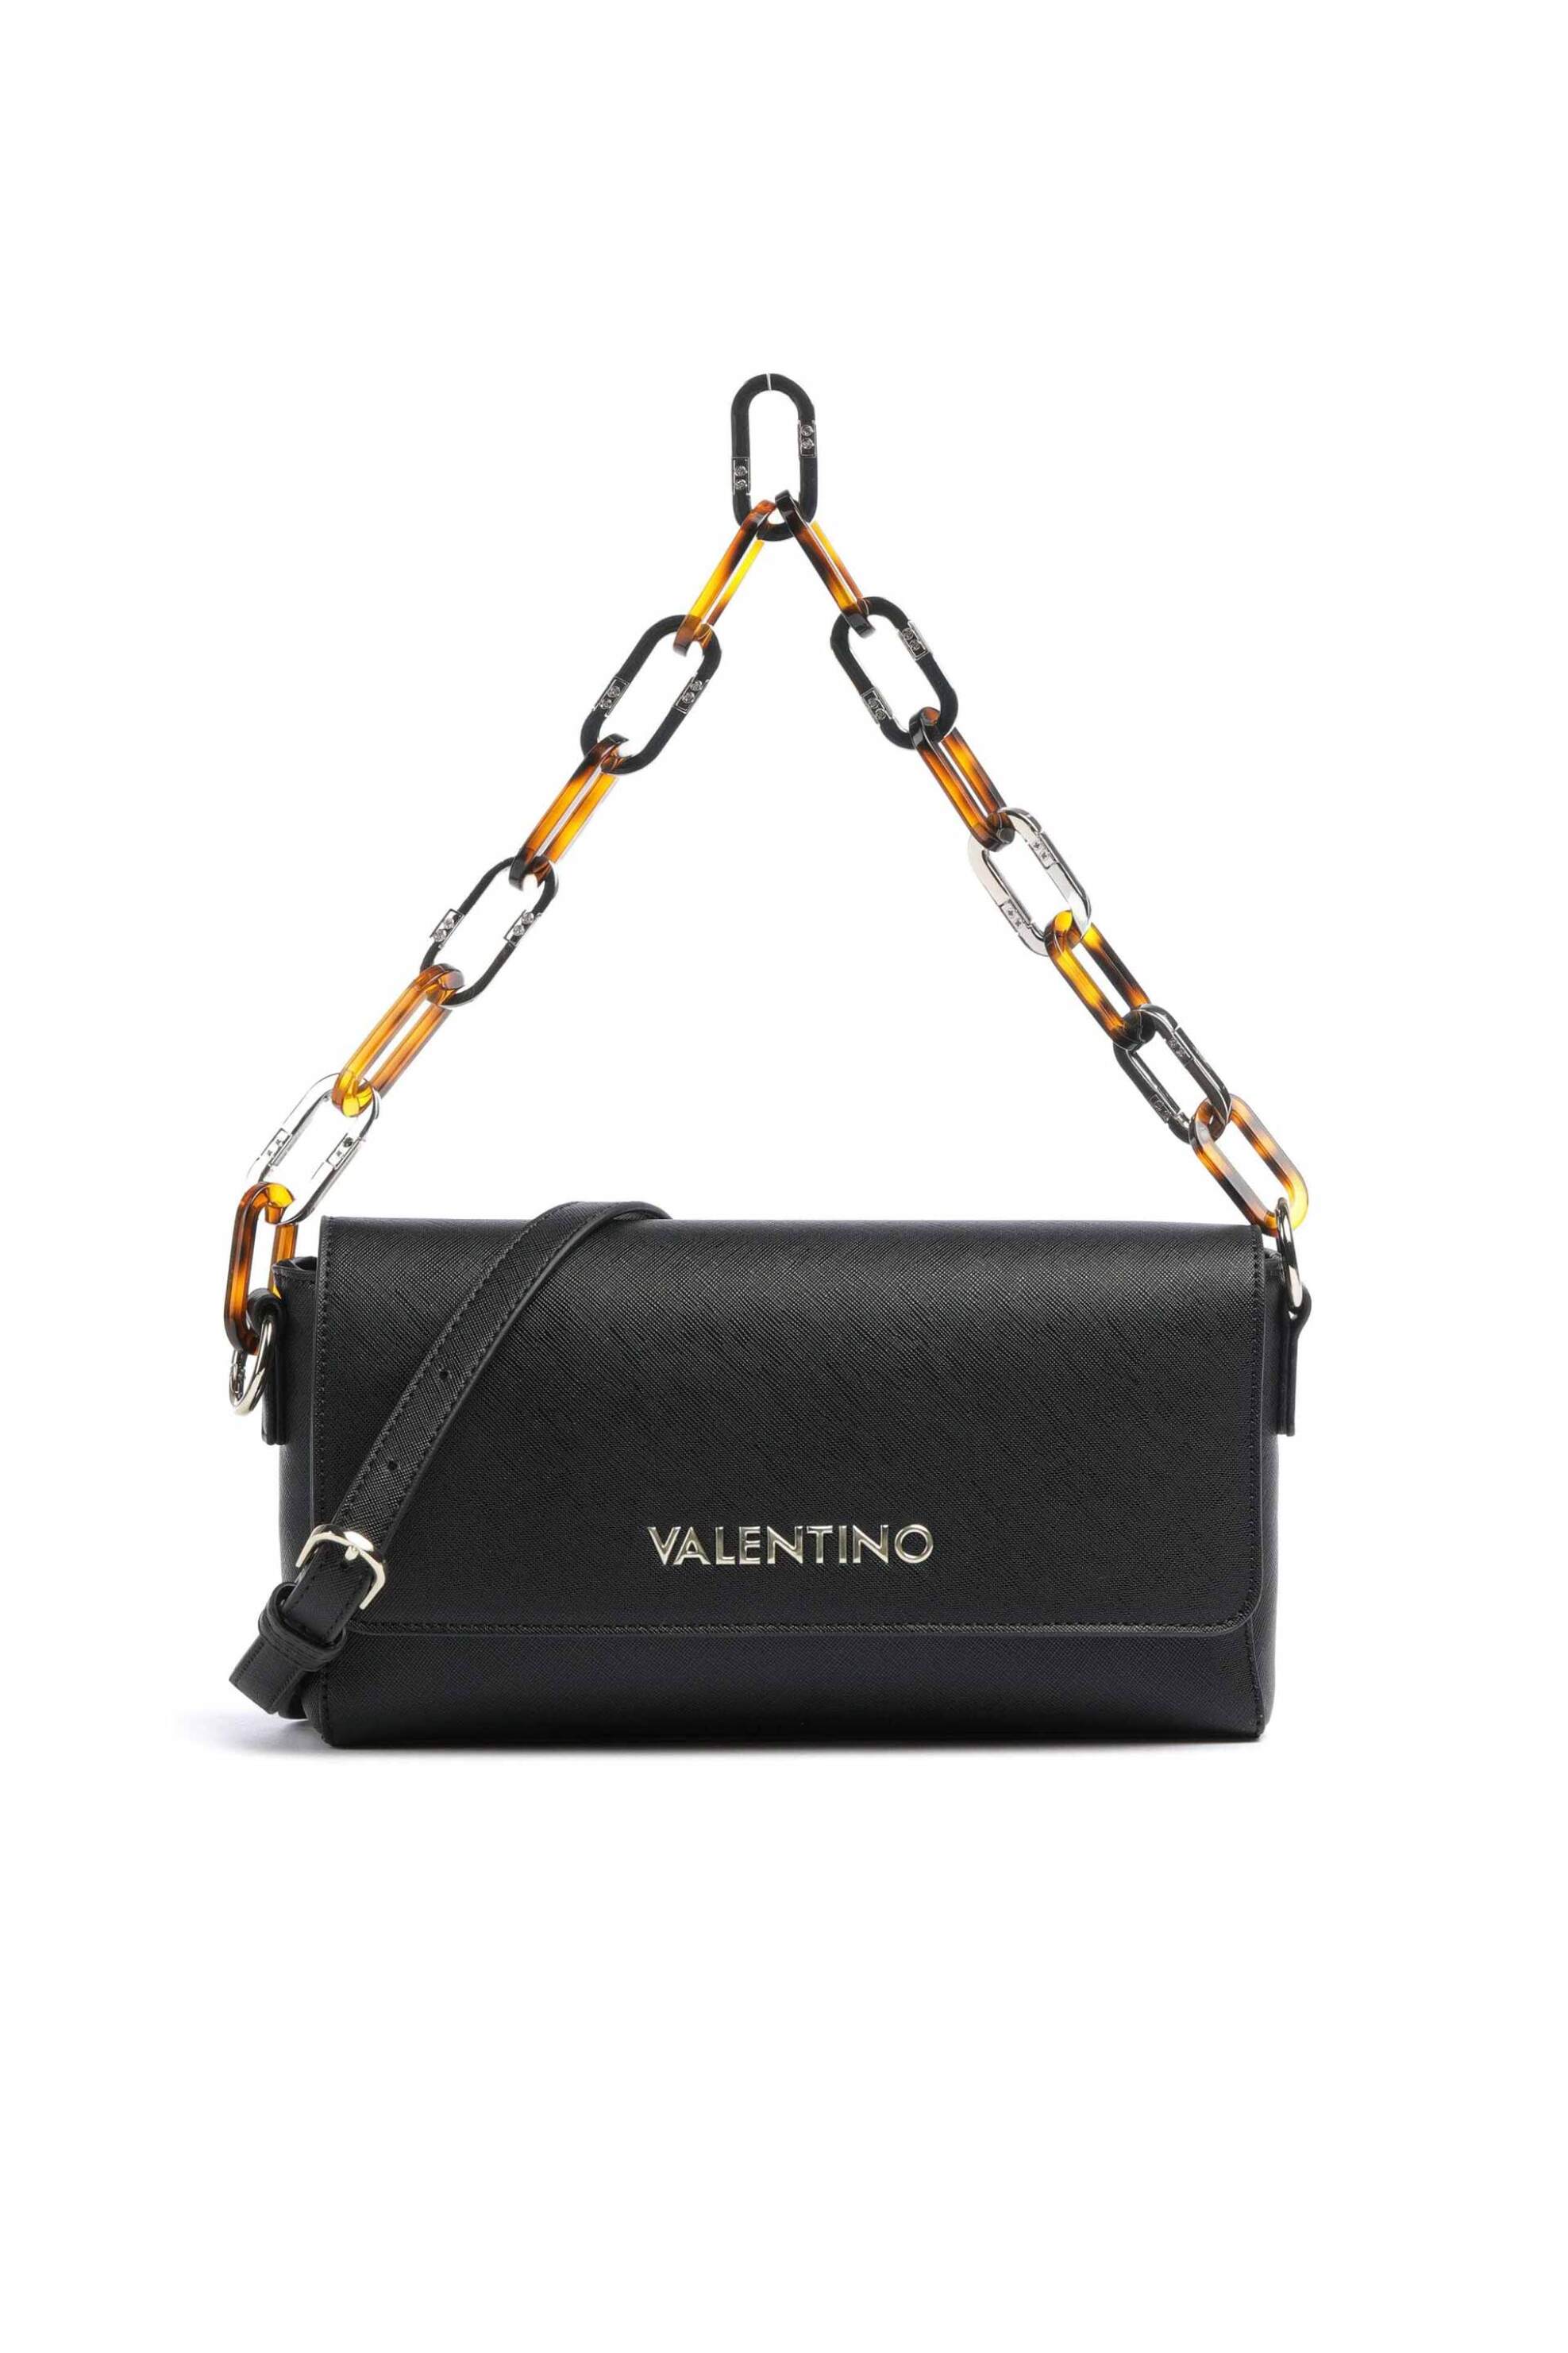 Γυναίκα > ΤΣΑΝΤΕΣ > Τσάντες Ώμου & Shopper Bags Valentino γυναικεία τσάντα ώμου μονόχρωμη με contrast logo μπροστά "Bercy" - 55KVBS7LM03/BER Μαύρο